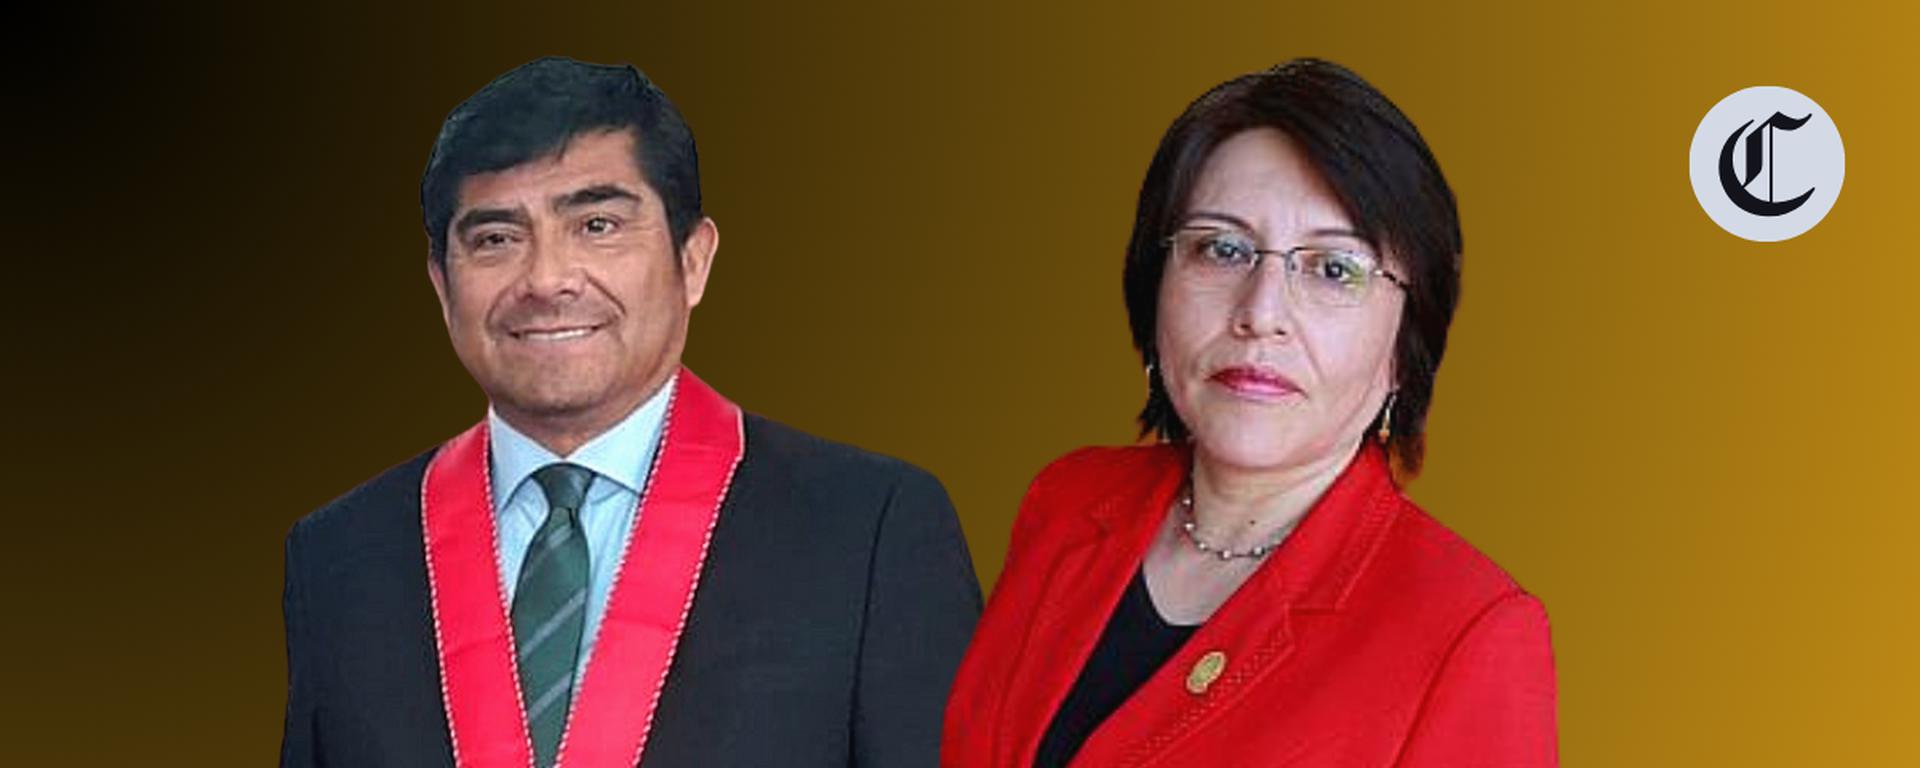 Fiscales Delia Espinoza y Luis Germaná asumen puestos claves: ¿Qué casos tienen en sus manos?